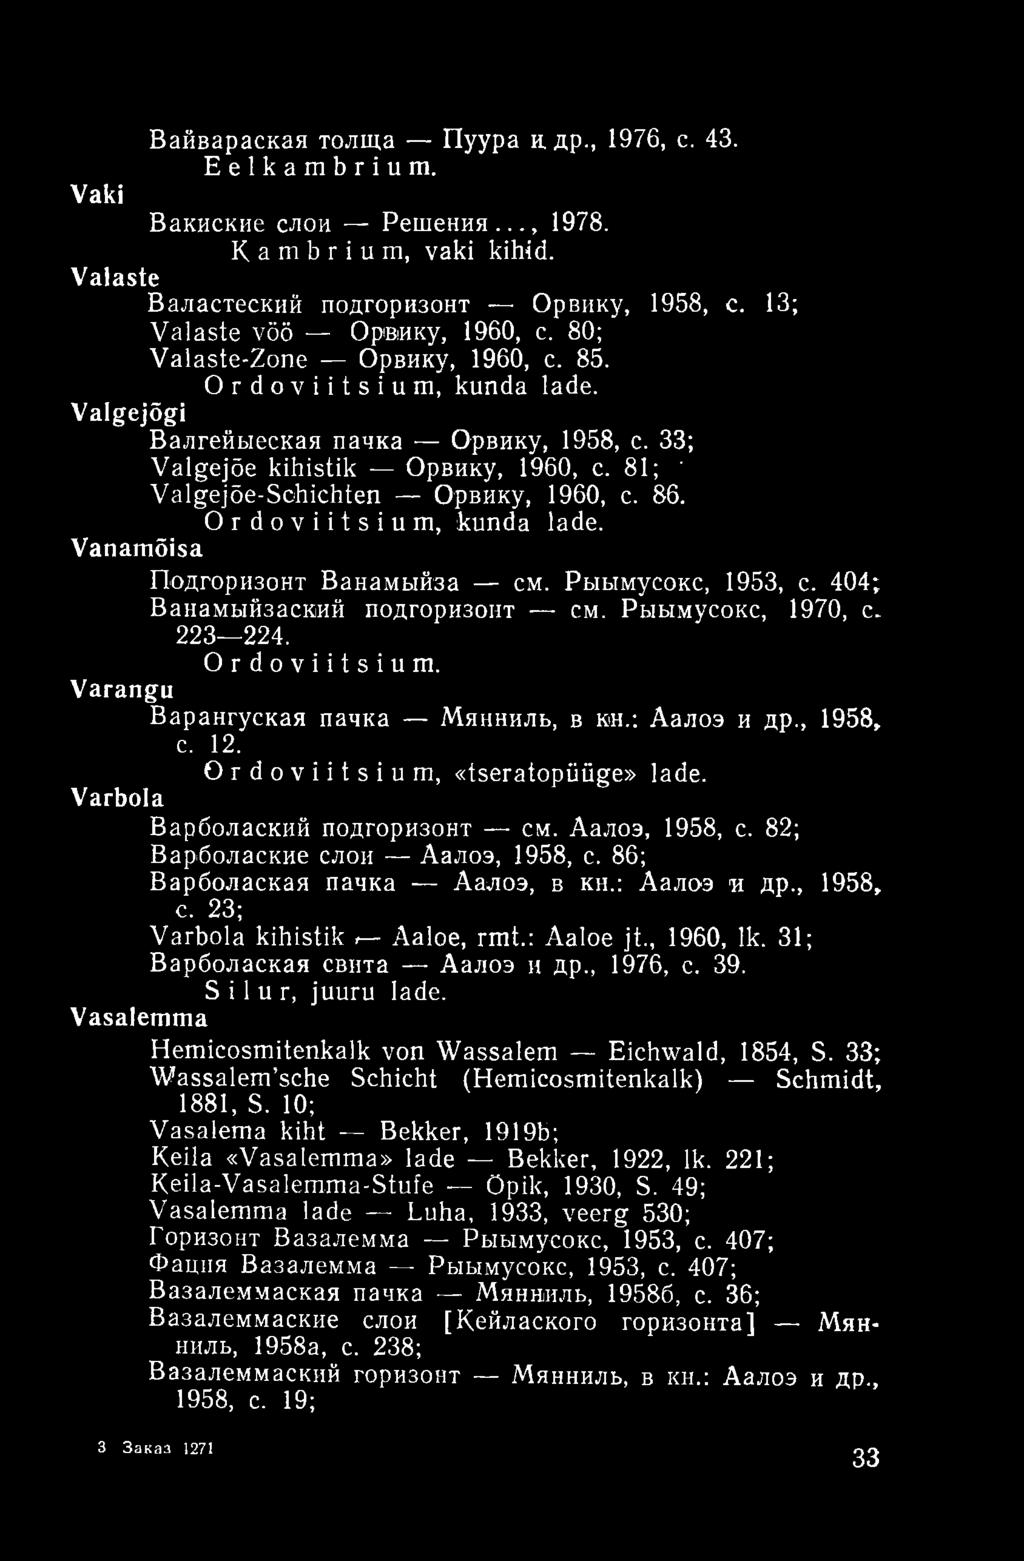 Ordoviitsium, kunda lade. Vanamõisa Подгоризонт Ванамыйза см. Рыымусокс, 1953, с. 404; Ванамыйзаский подгоризонт см. Рыымусокс, 1970, с. 223 224. Ordoviitsium. Varangu Варангуская пачка Мянниль, в кн.